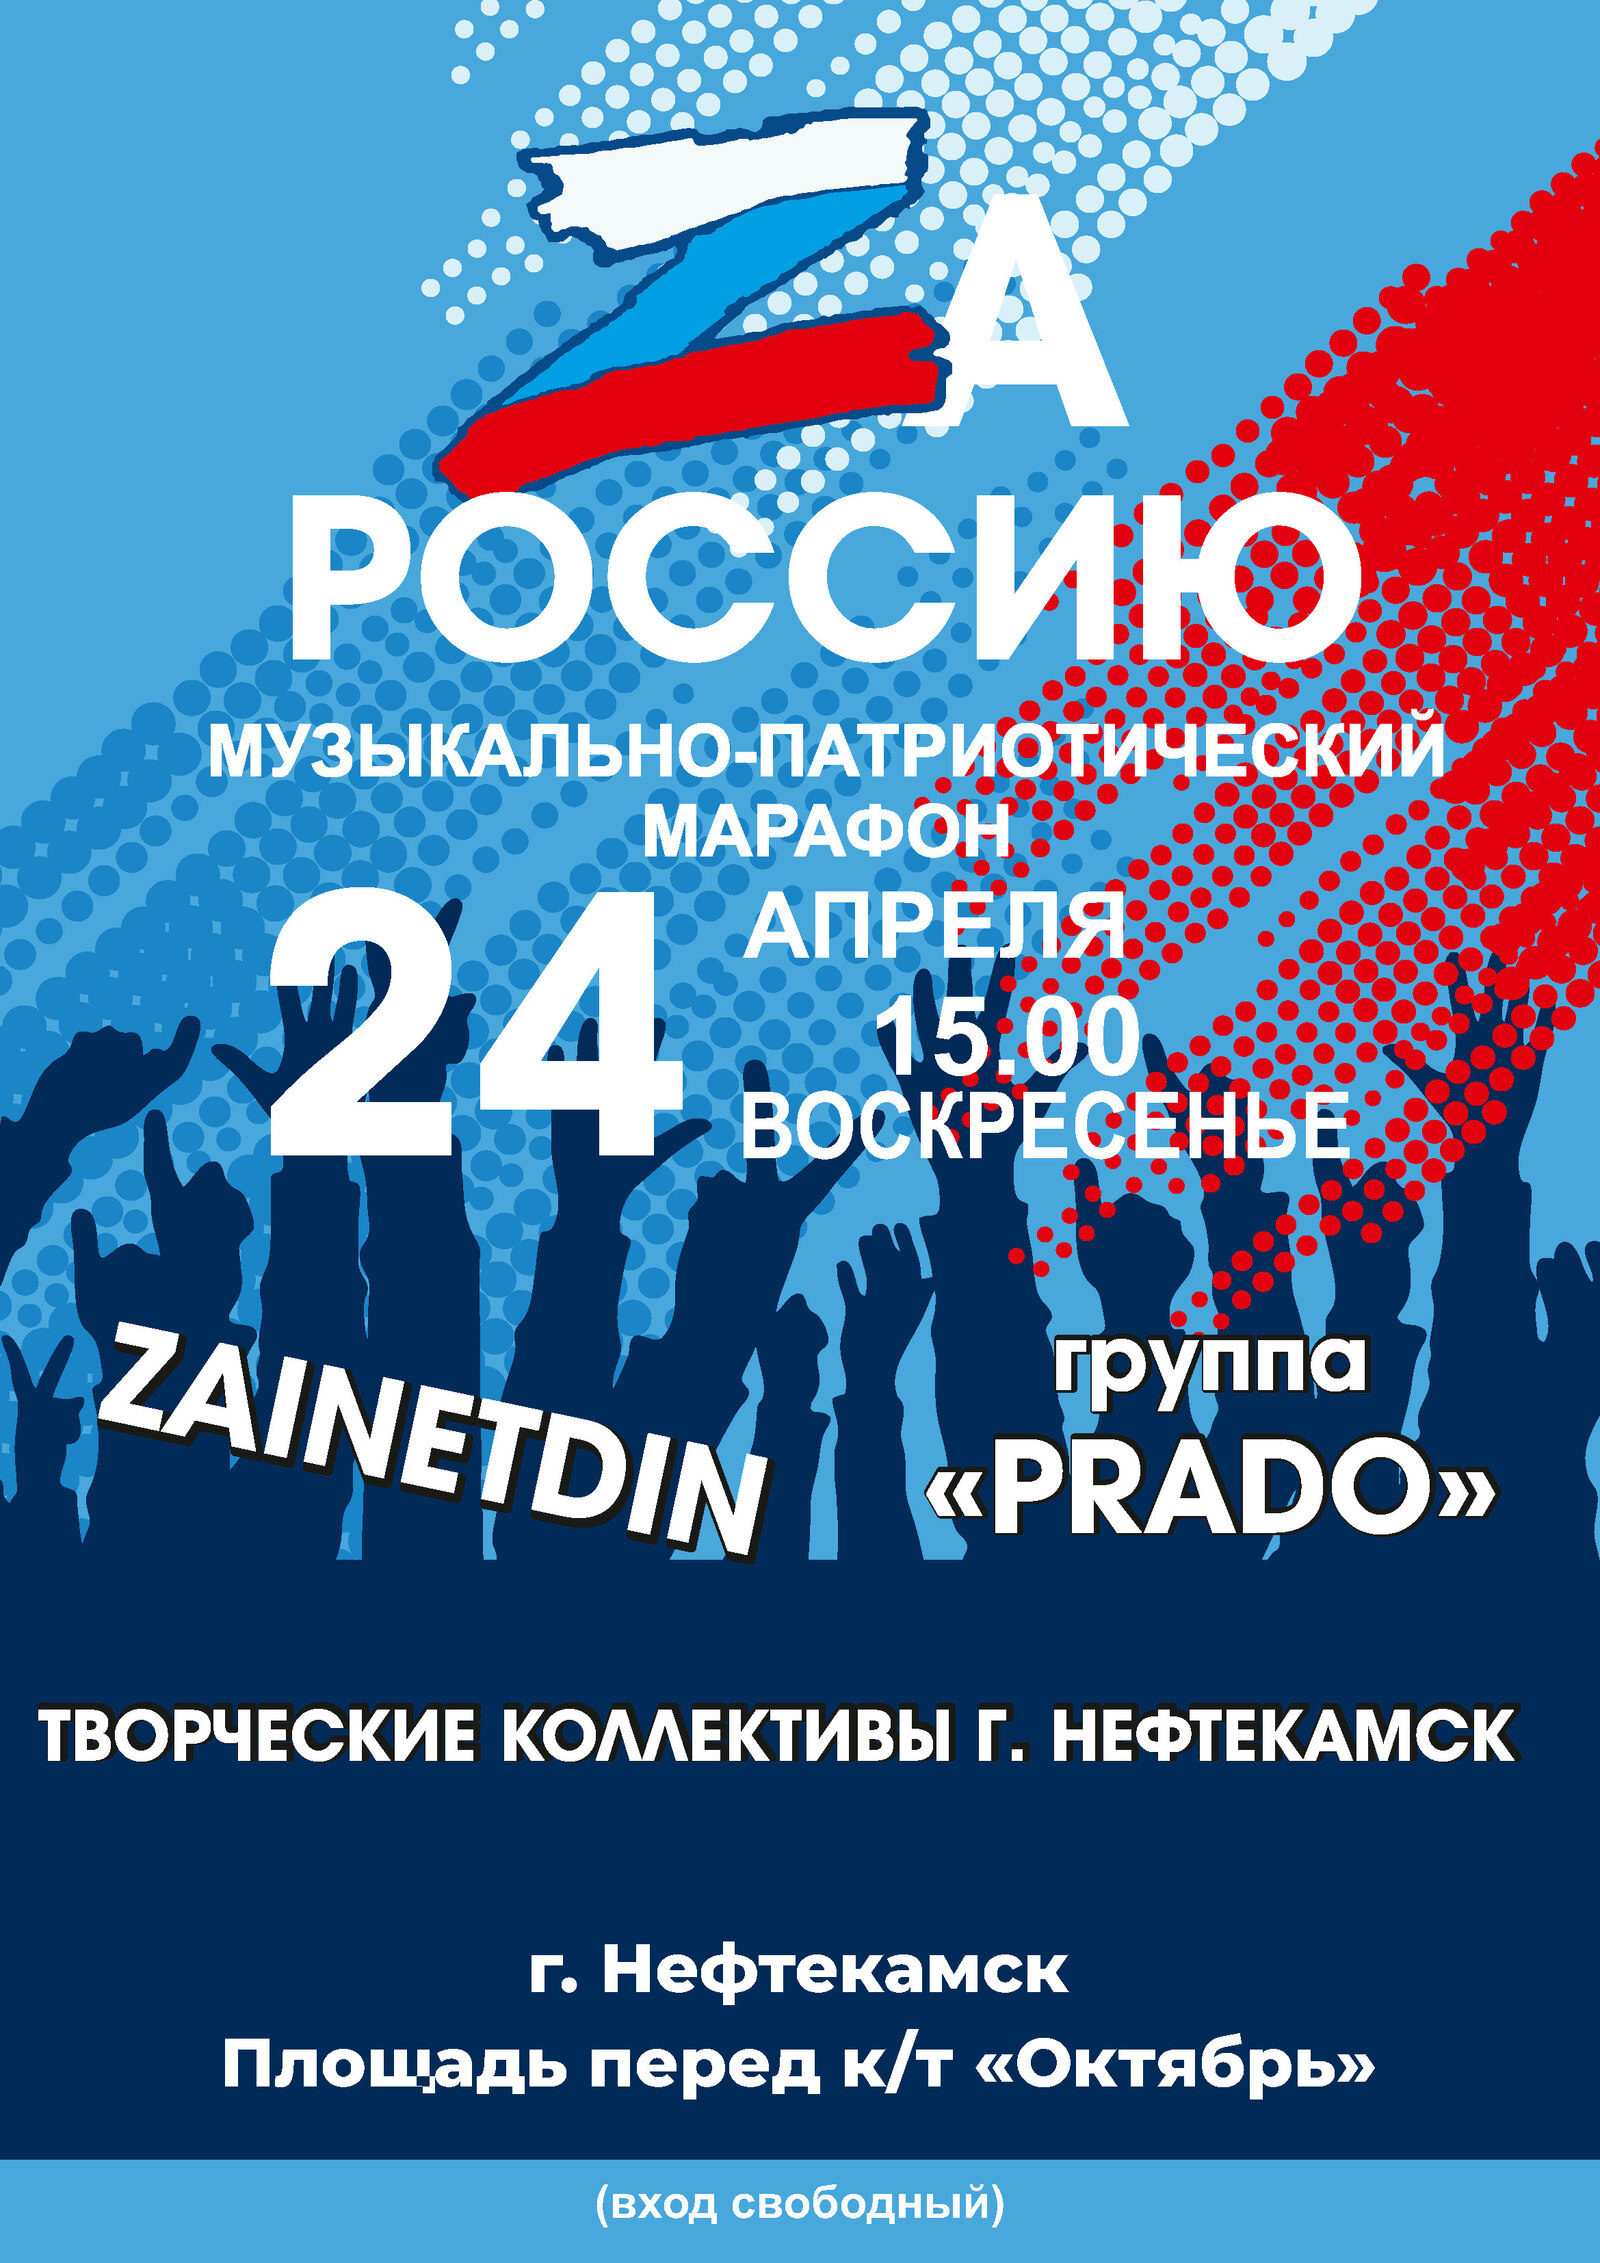 Жители Башкортостана примут участие в музыкально-патриотическом марафоне «ZaРоссию»